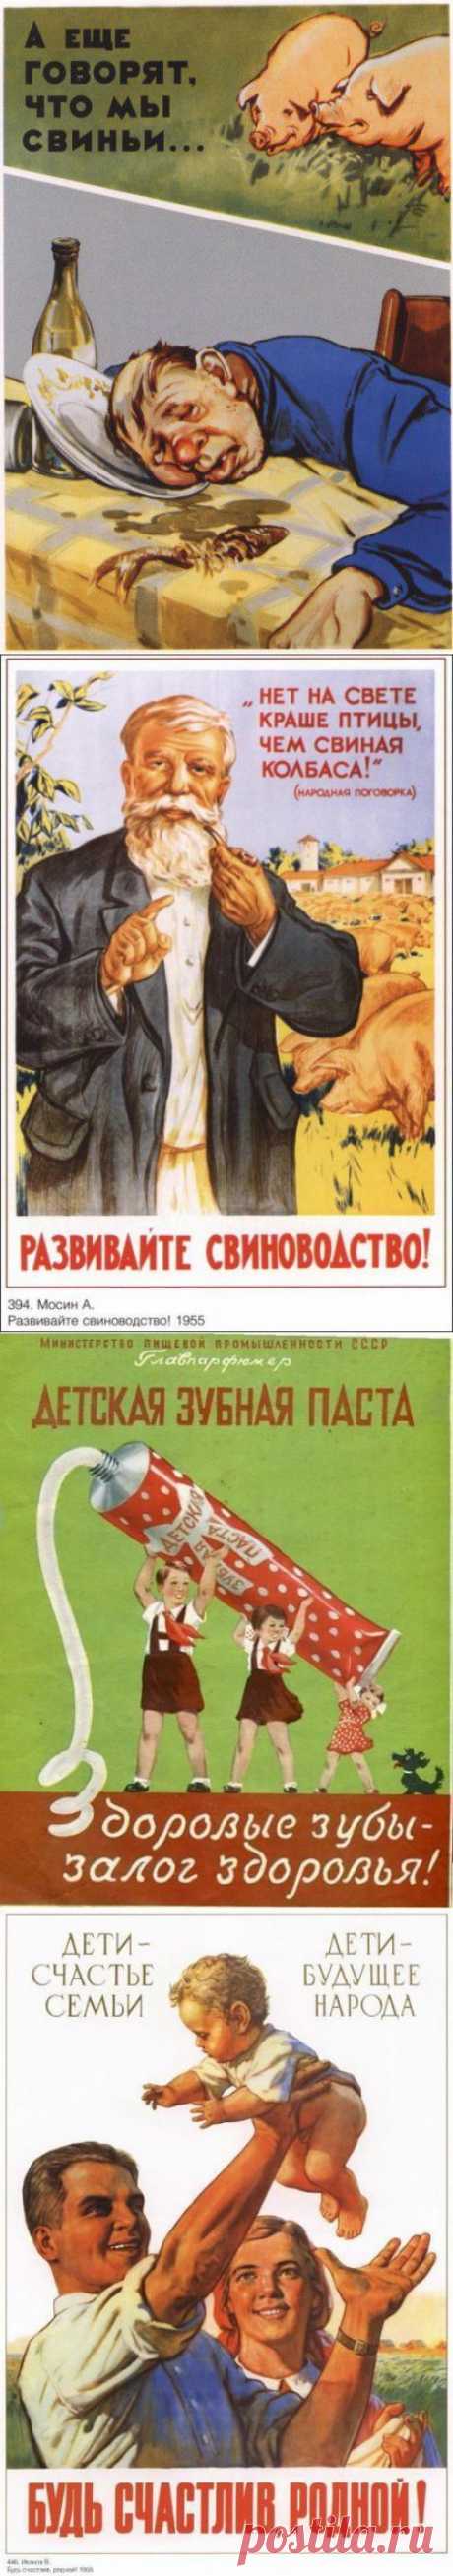 Социальная реклама / Назад в СССР / Back in USSR